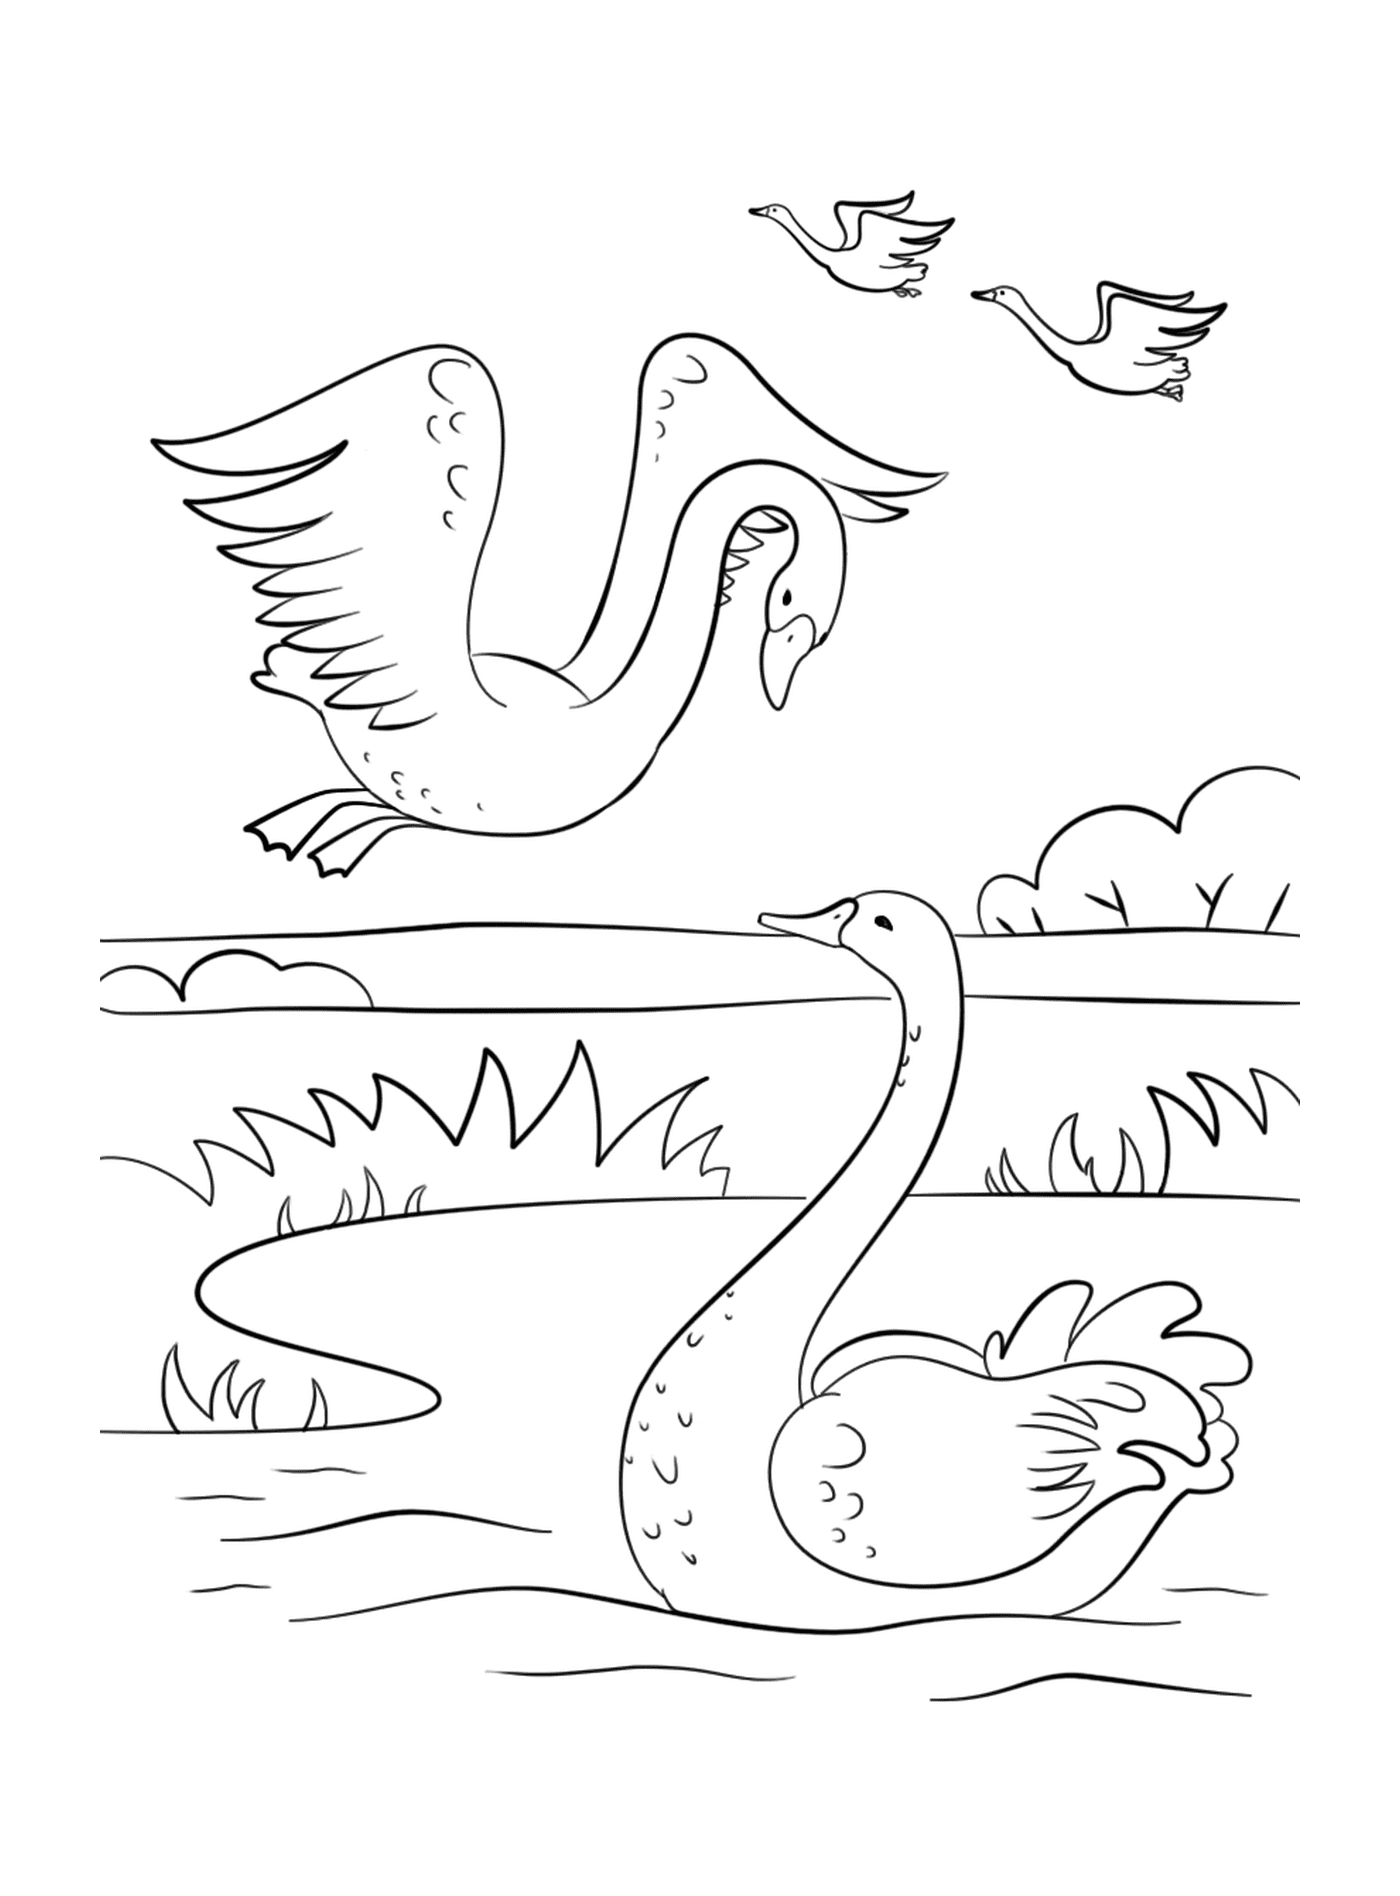  Un cisne y un ganso nadando en un estanque 